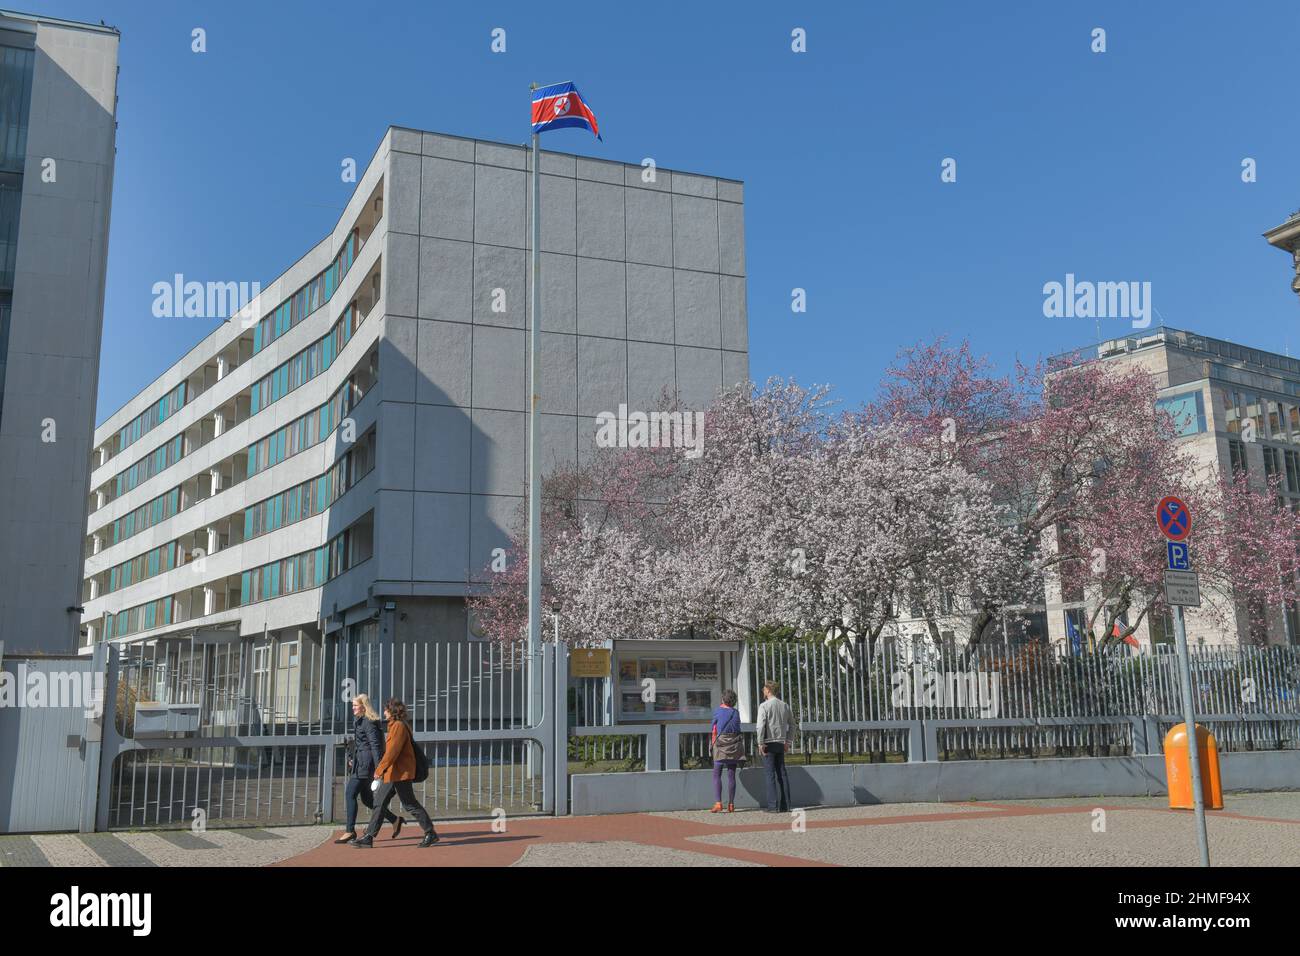 Ambasciata della Corea (Repubblica popolare Democratica), Glinkastrasse 5, Mitte, Berlino, Germania Foto Stock